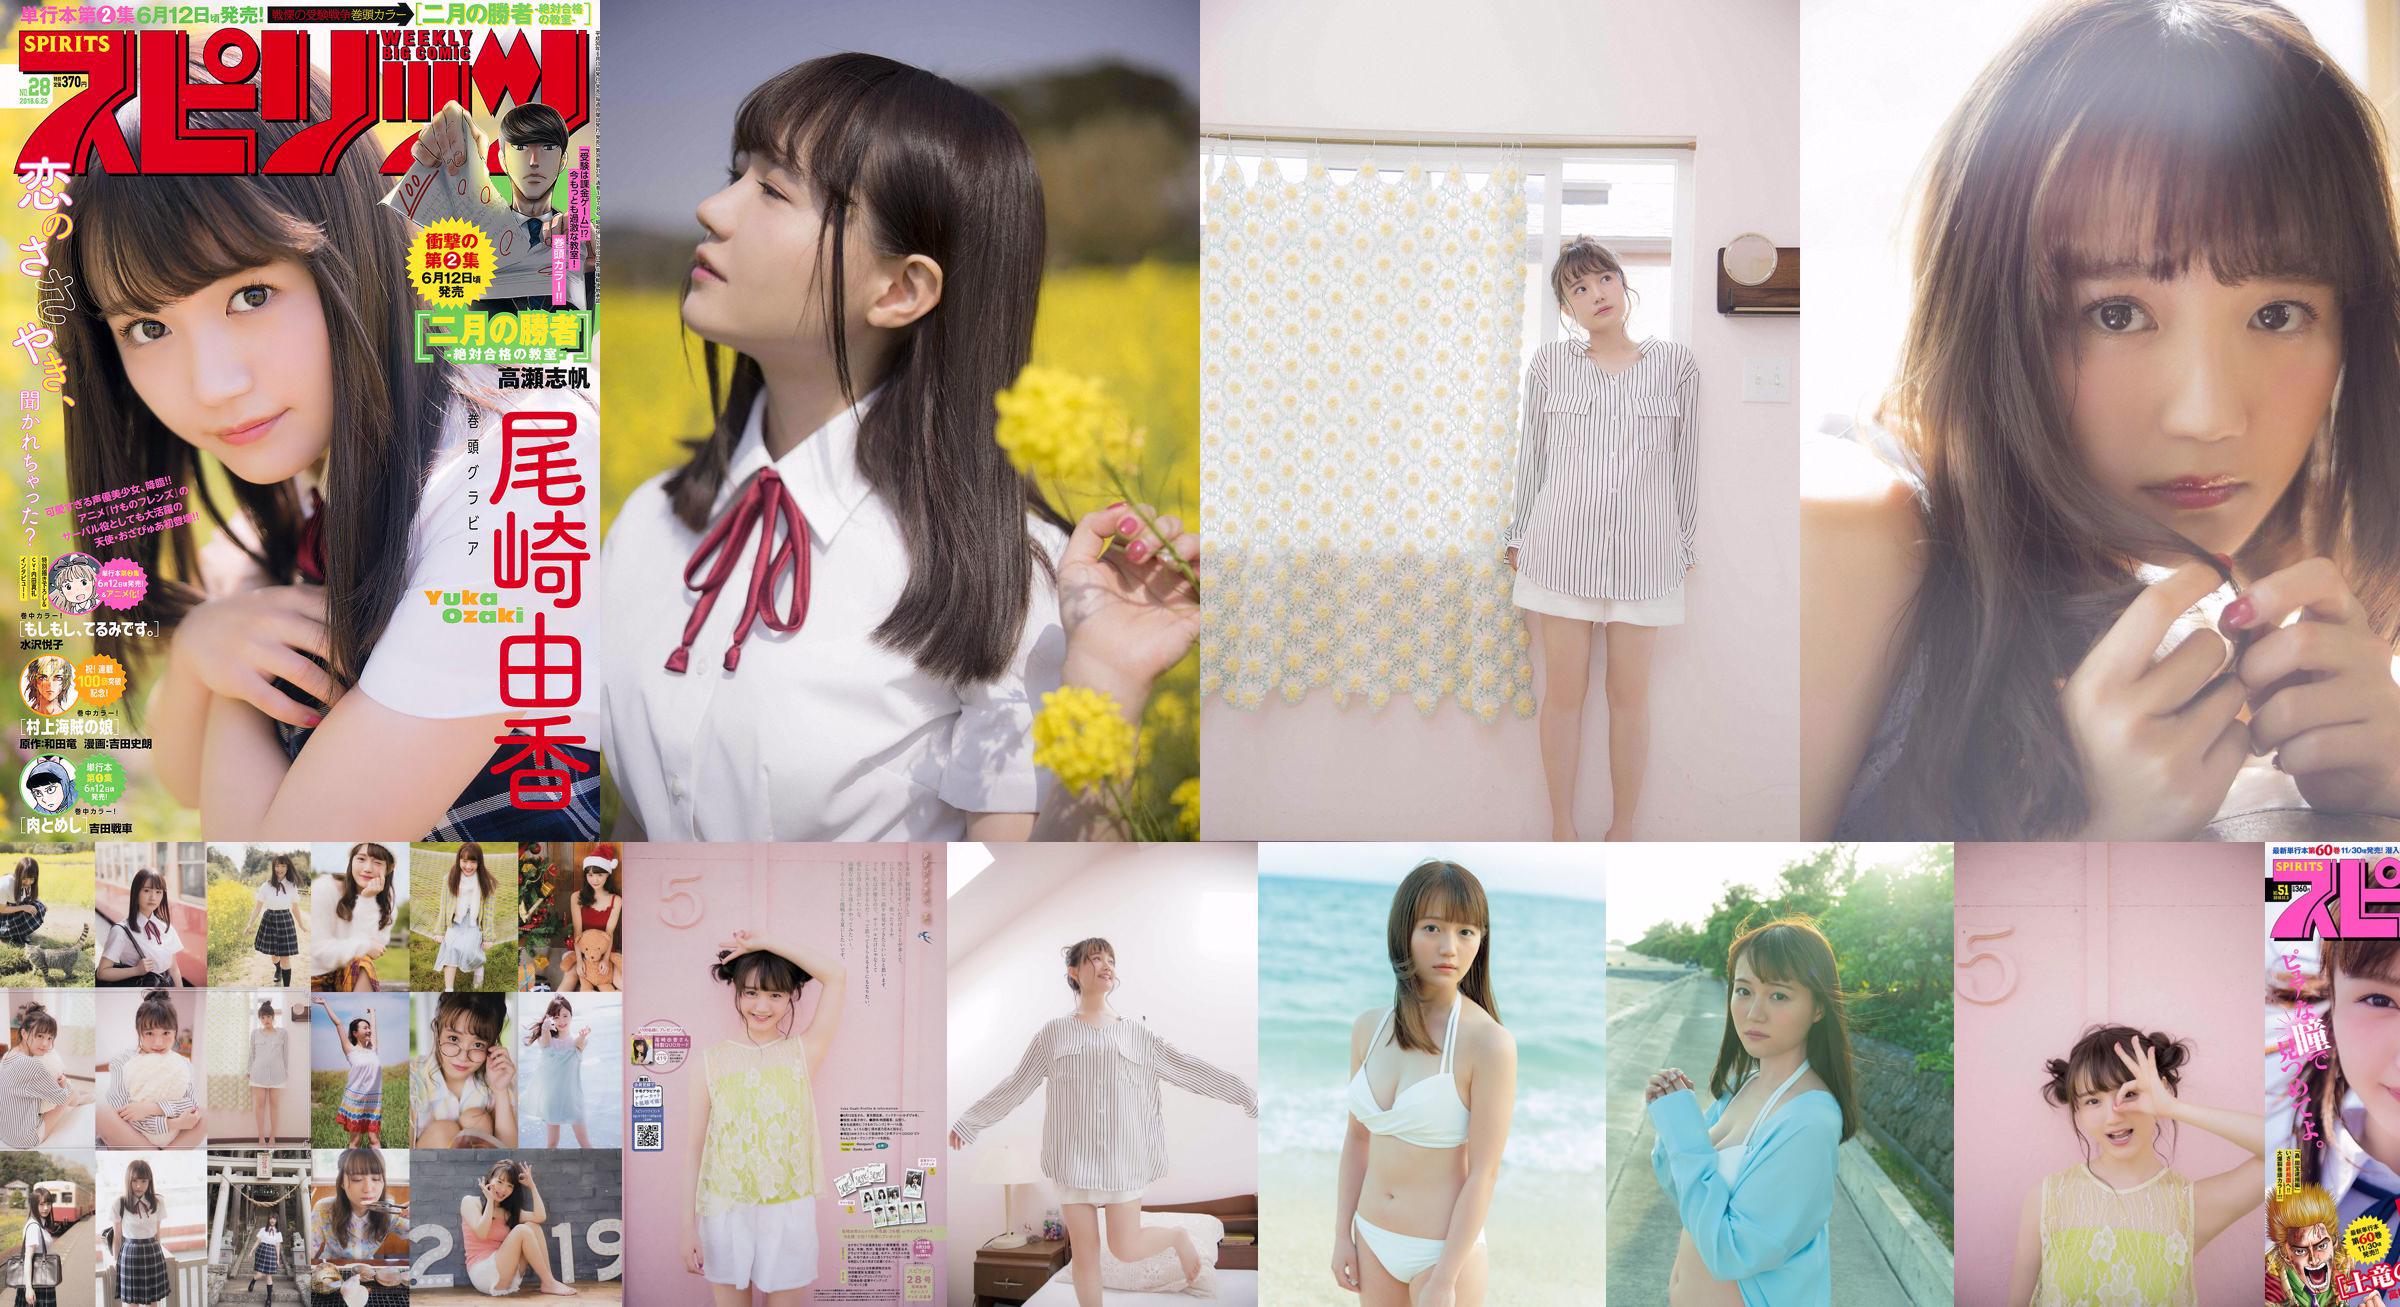 [VENDREDI] Yuka Ozaki "Le doubleur du personnage principal de l'anime" Kemono Friends "est maintenant en bikini blanc" Photo No.572d90 Page 3